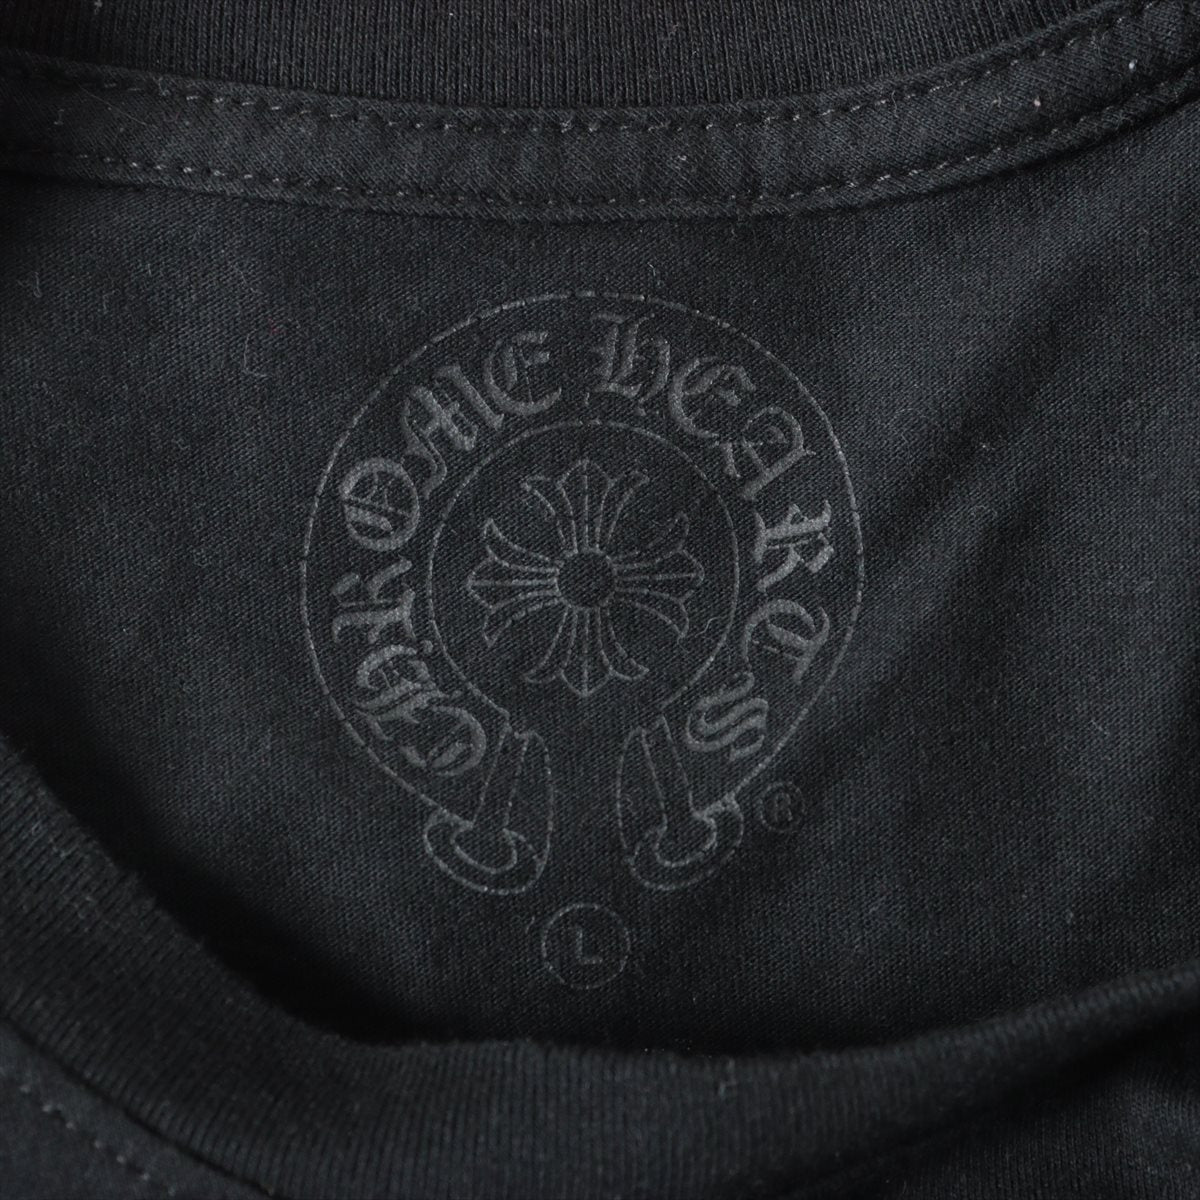 クロムハーツ ロングTシャツ コットン サイズL ブラック ダガープリント アイチャート スレ ニオイあり